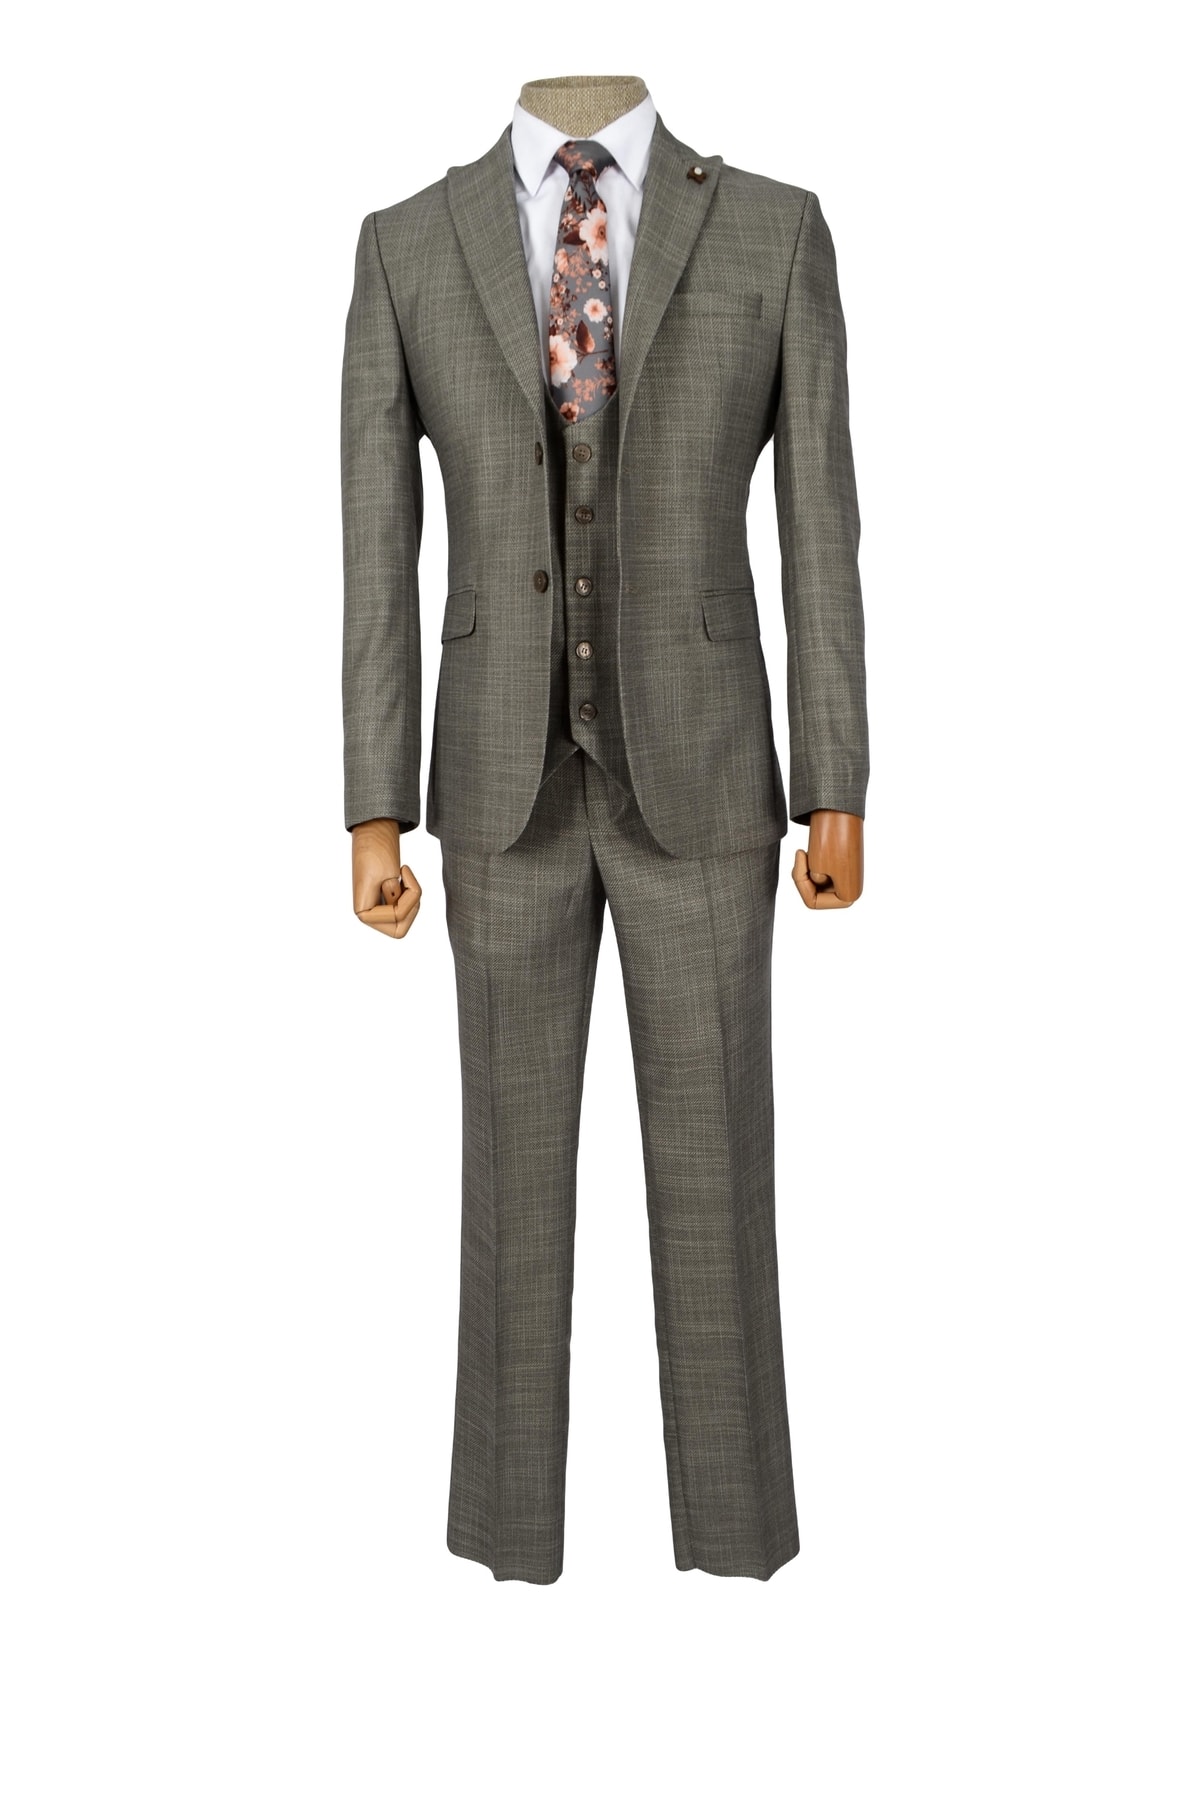 Cengiz İnler Armür Çizgi Çift Düğme 6 Drop Slim Yelekli Erkek Takım Elbise